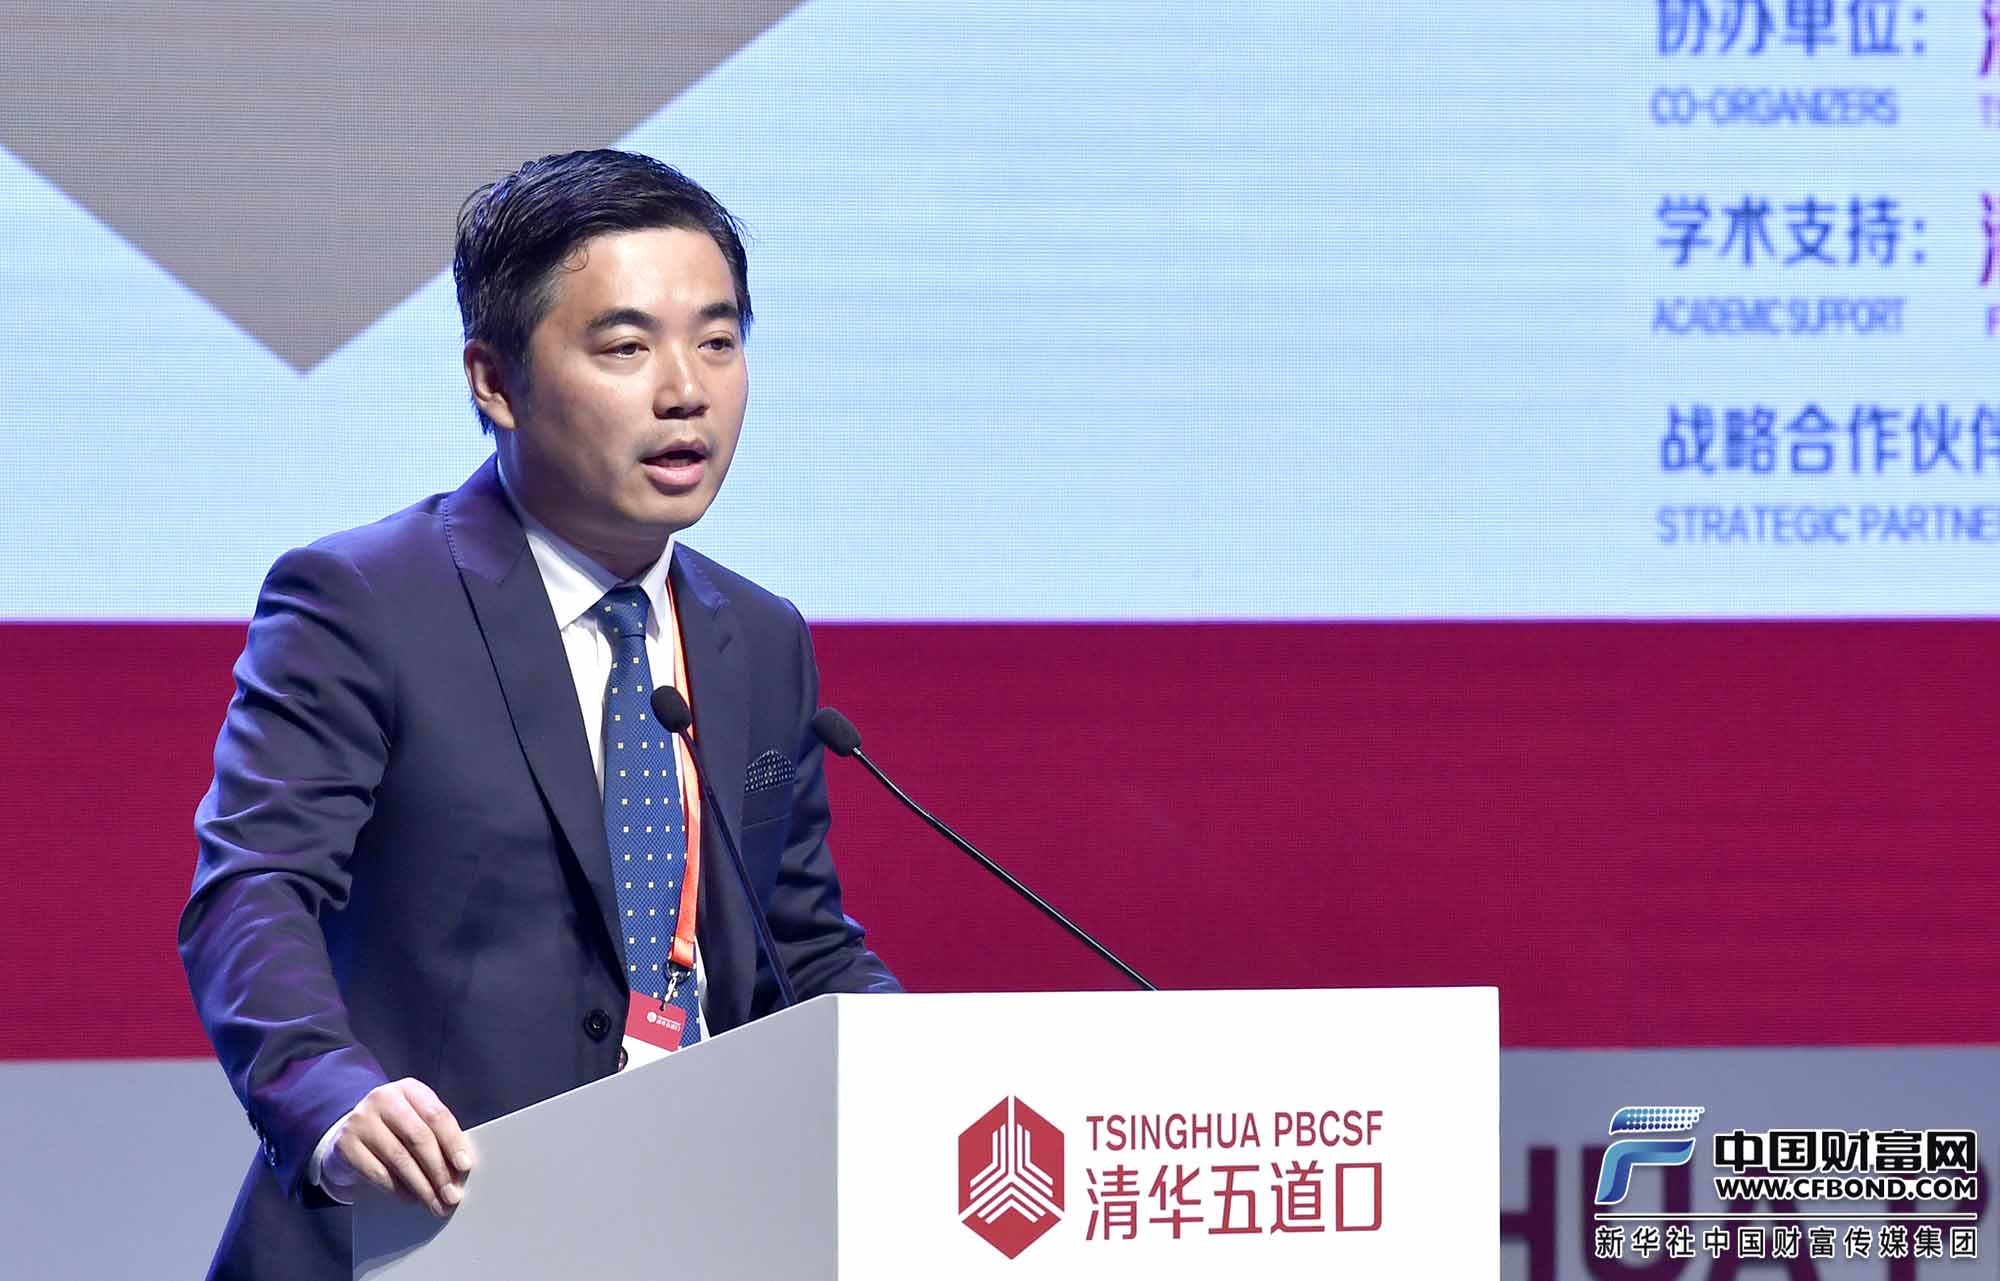 主题演讲：上海冰鉴信息科技有限公司创始人、董事长、首席执行官顾凌云